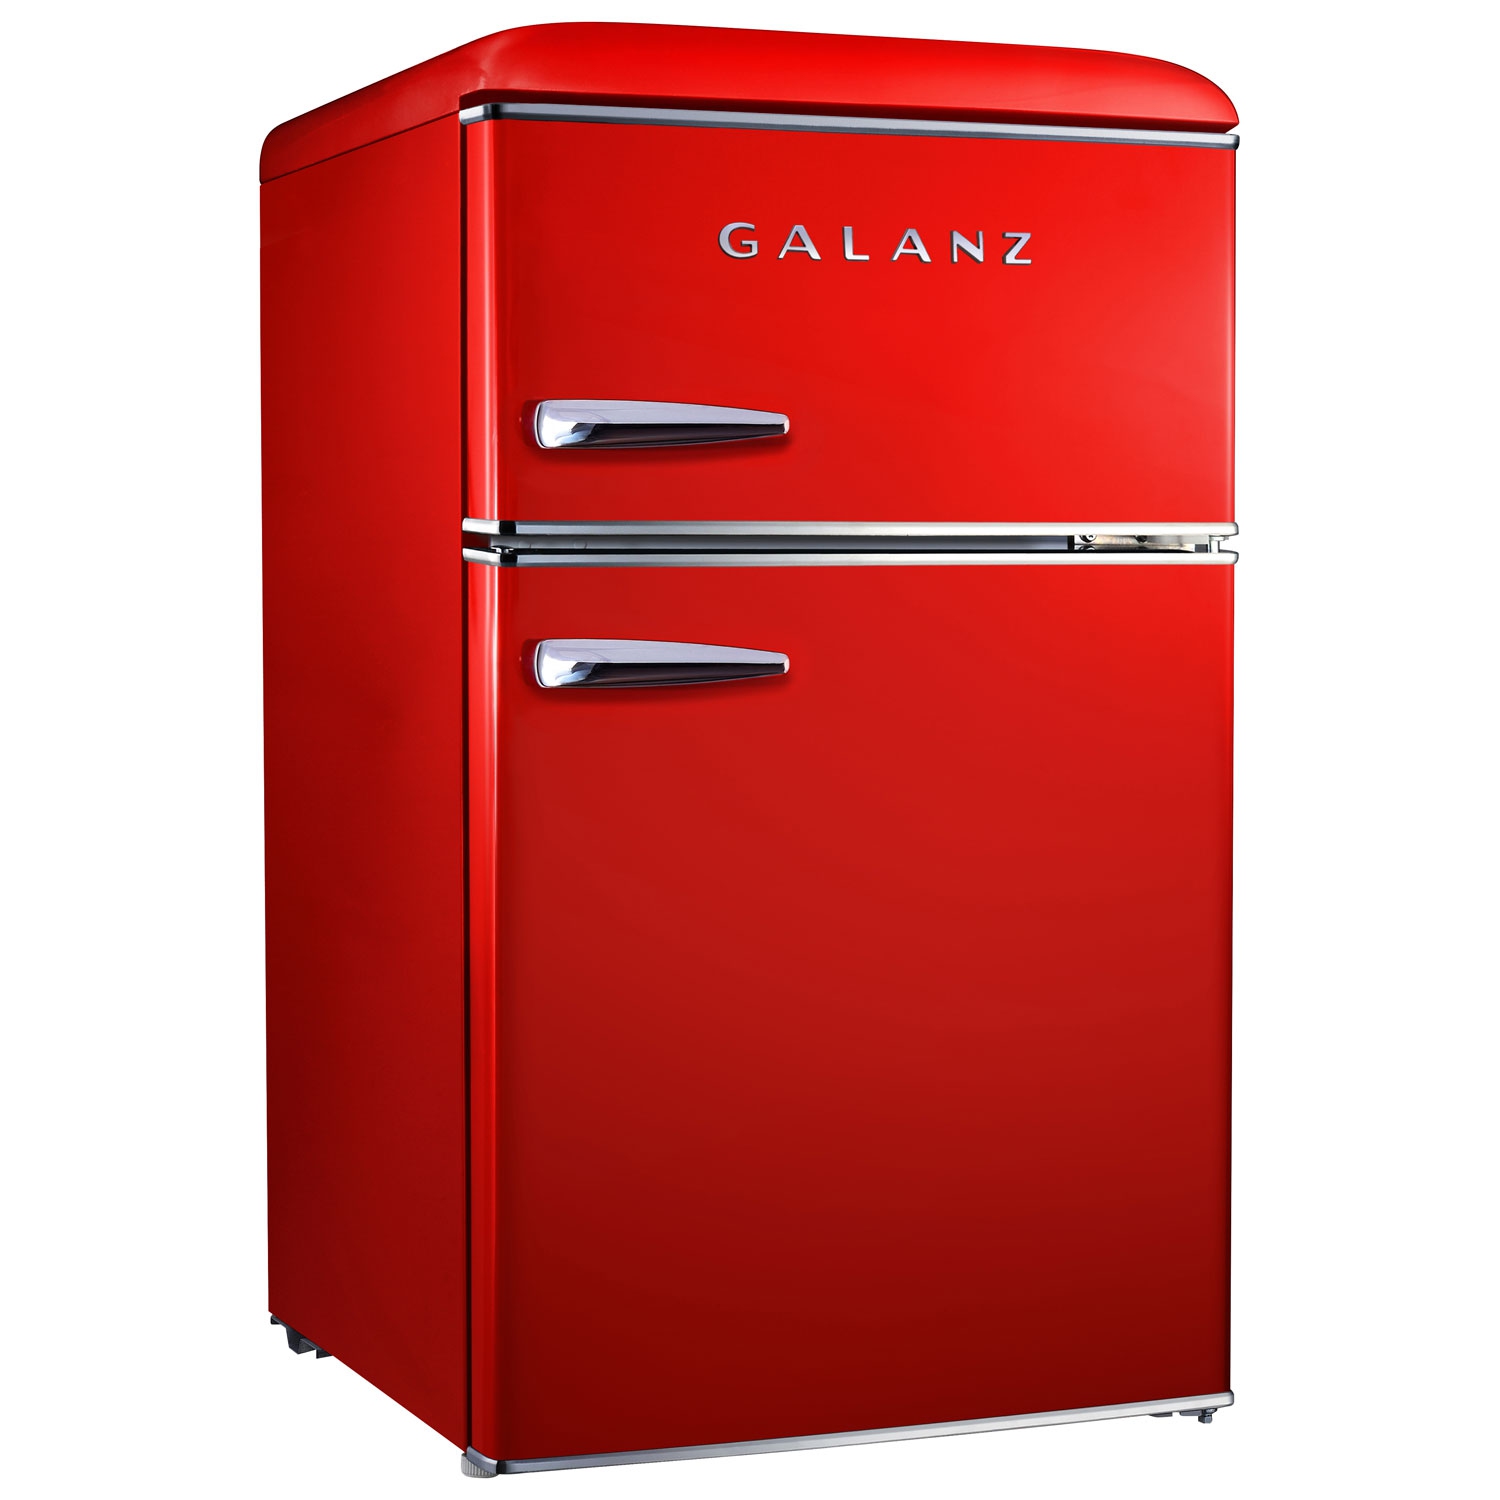 Galanz 3.1 Cu. Ft. Freestanding Top Freezer Retro Bar Fridge (GLR31TRDER) - Hot Rod Red